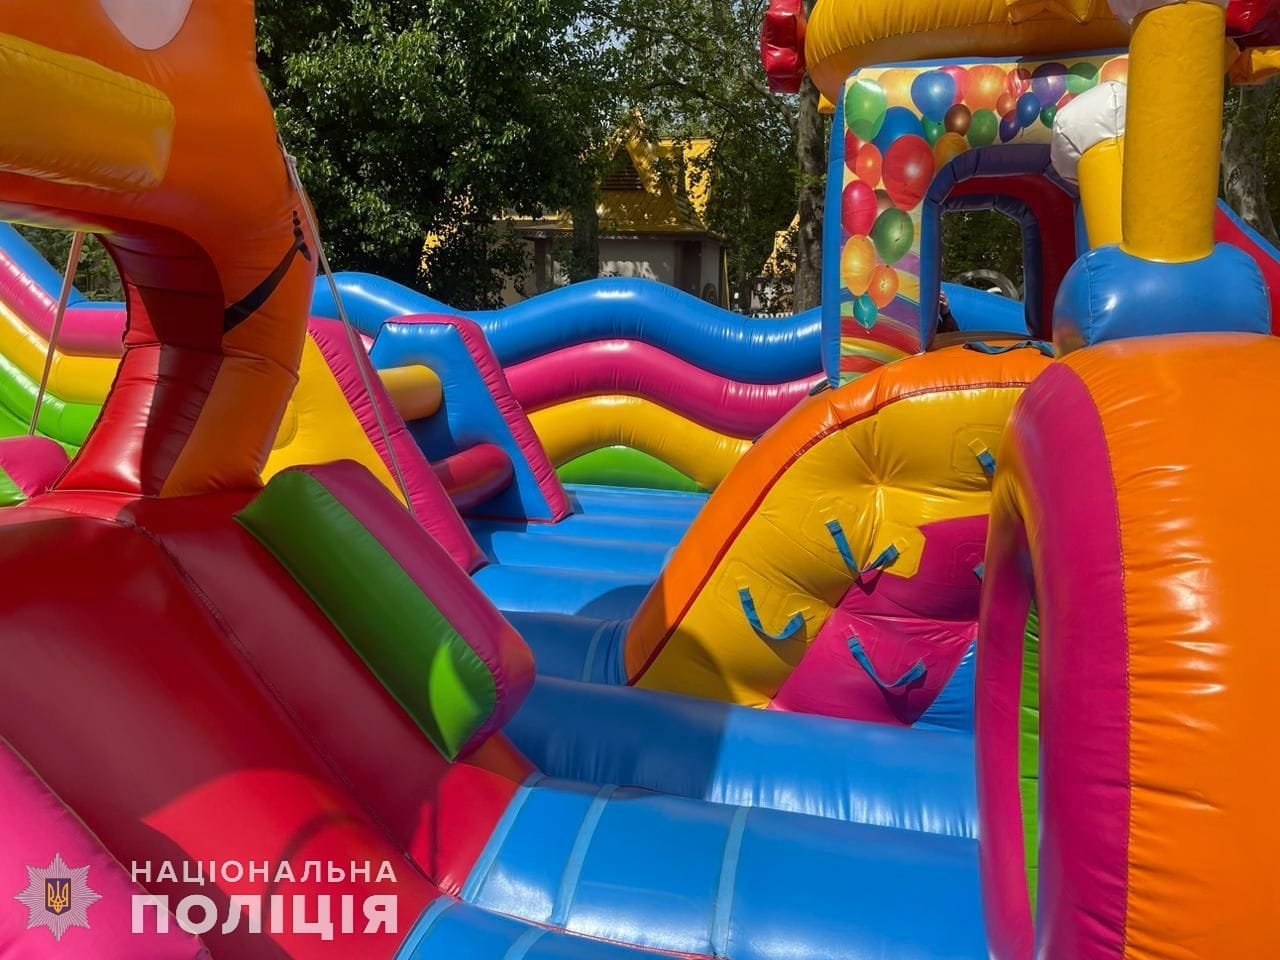 Ugrálóvár az ukrajnai Mikolajivban, ahol megfulladt egy 4 éves kislány